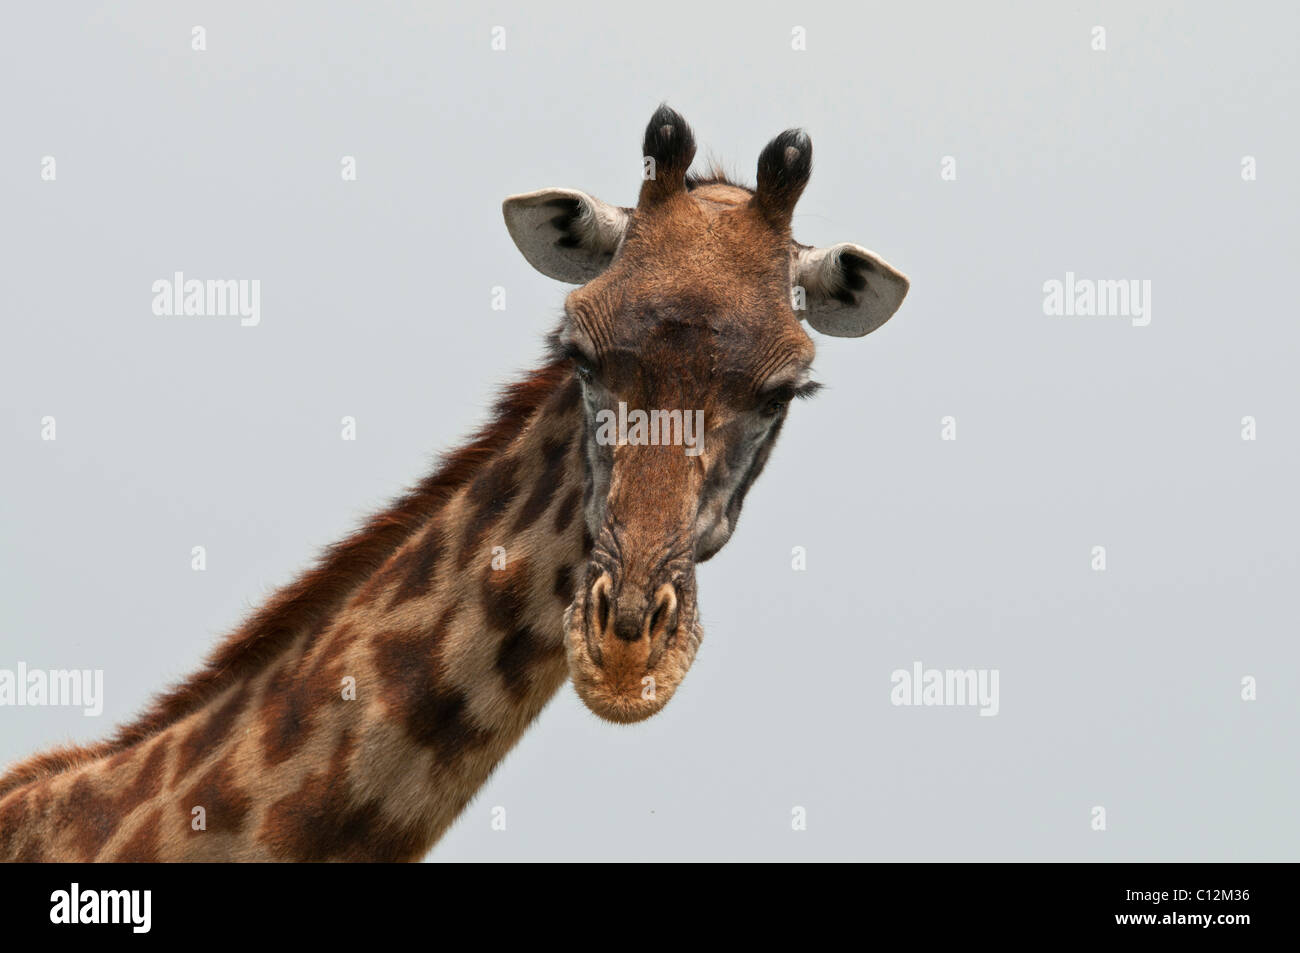 Stock photo closeup of the neck and face of a Masai giraffe. Stock Photo